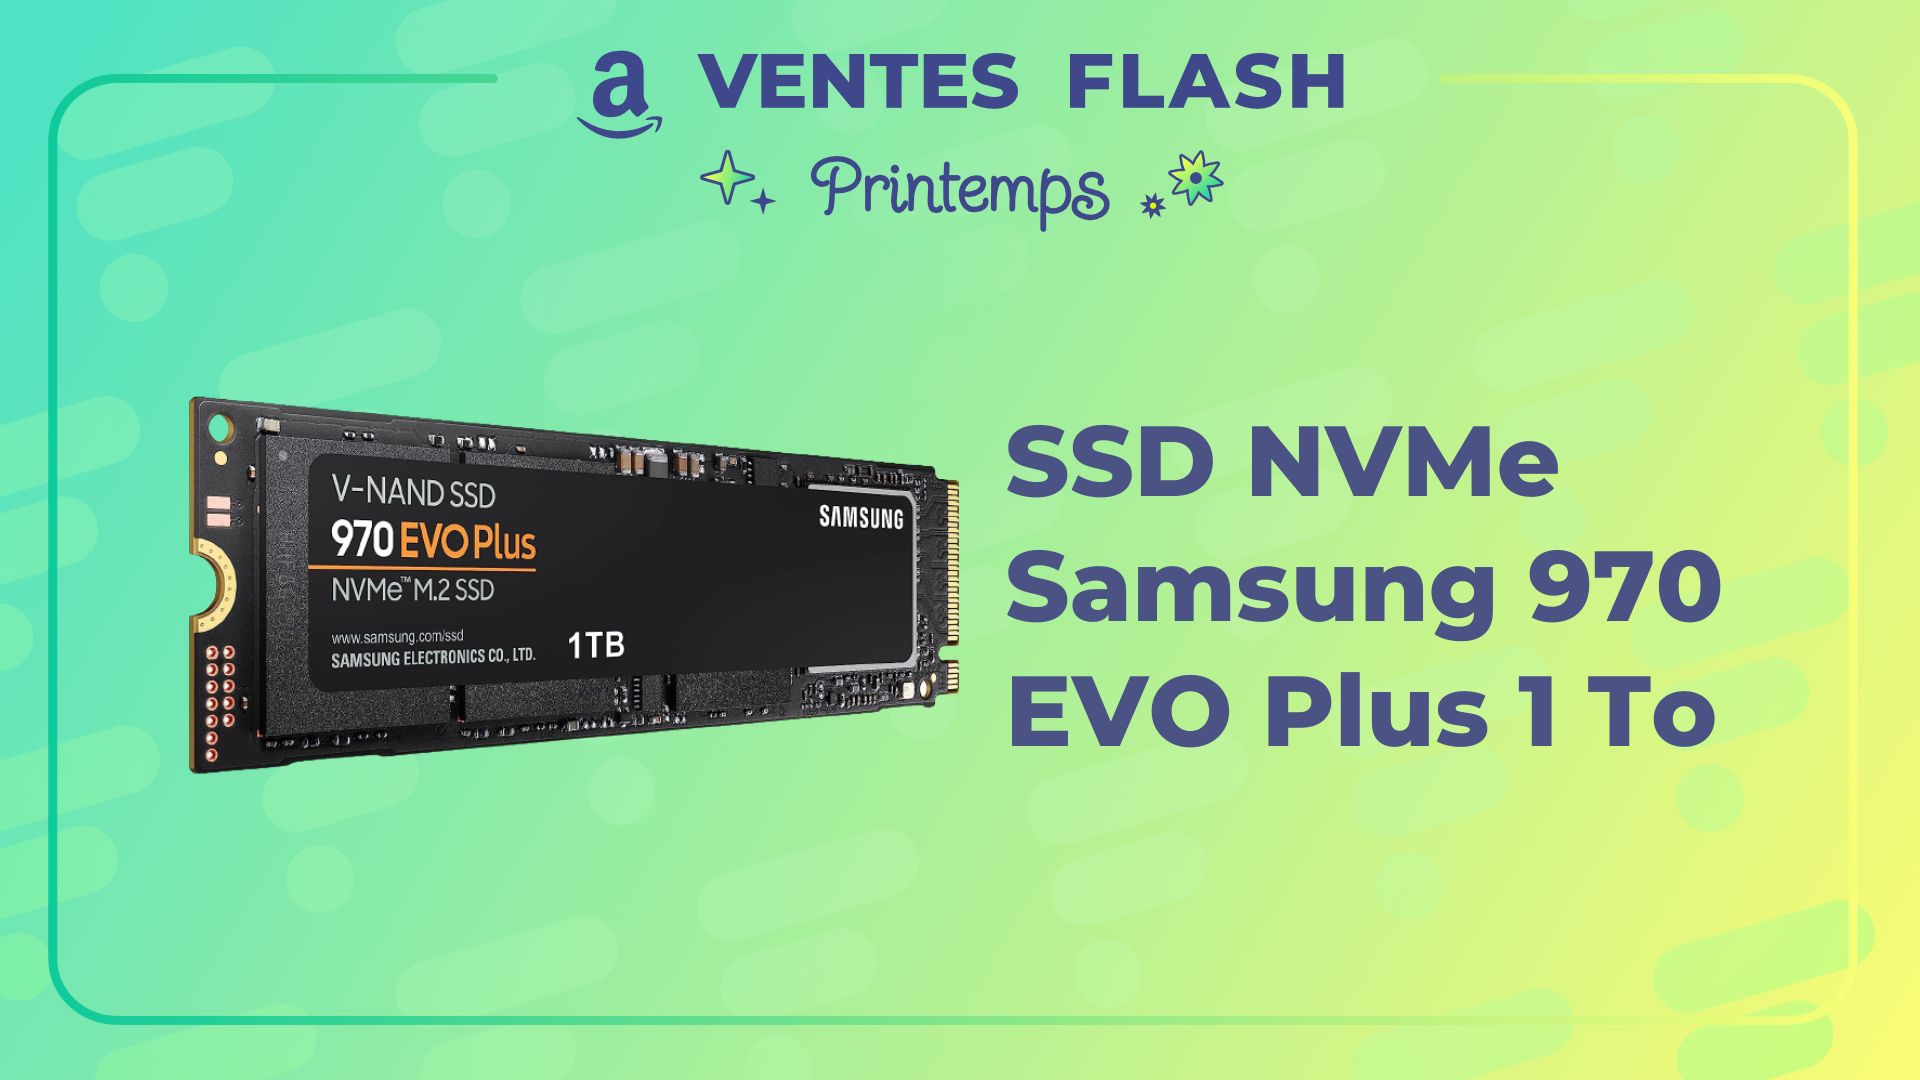 Le SSD NVMe Samsung 970 EVO Plus 1 To n'a jamais été moins cher sur